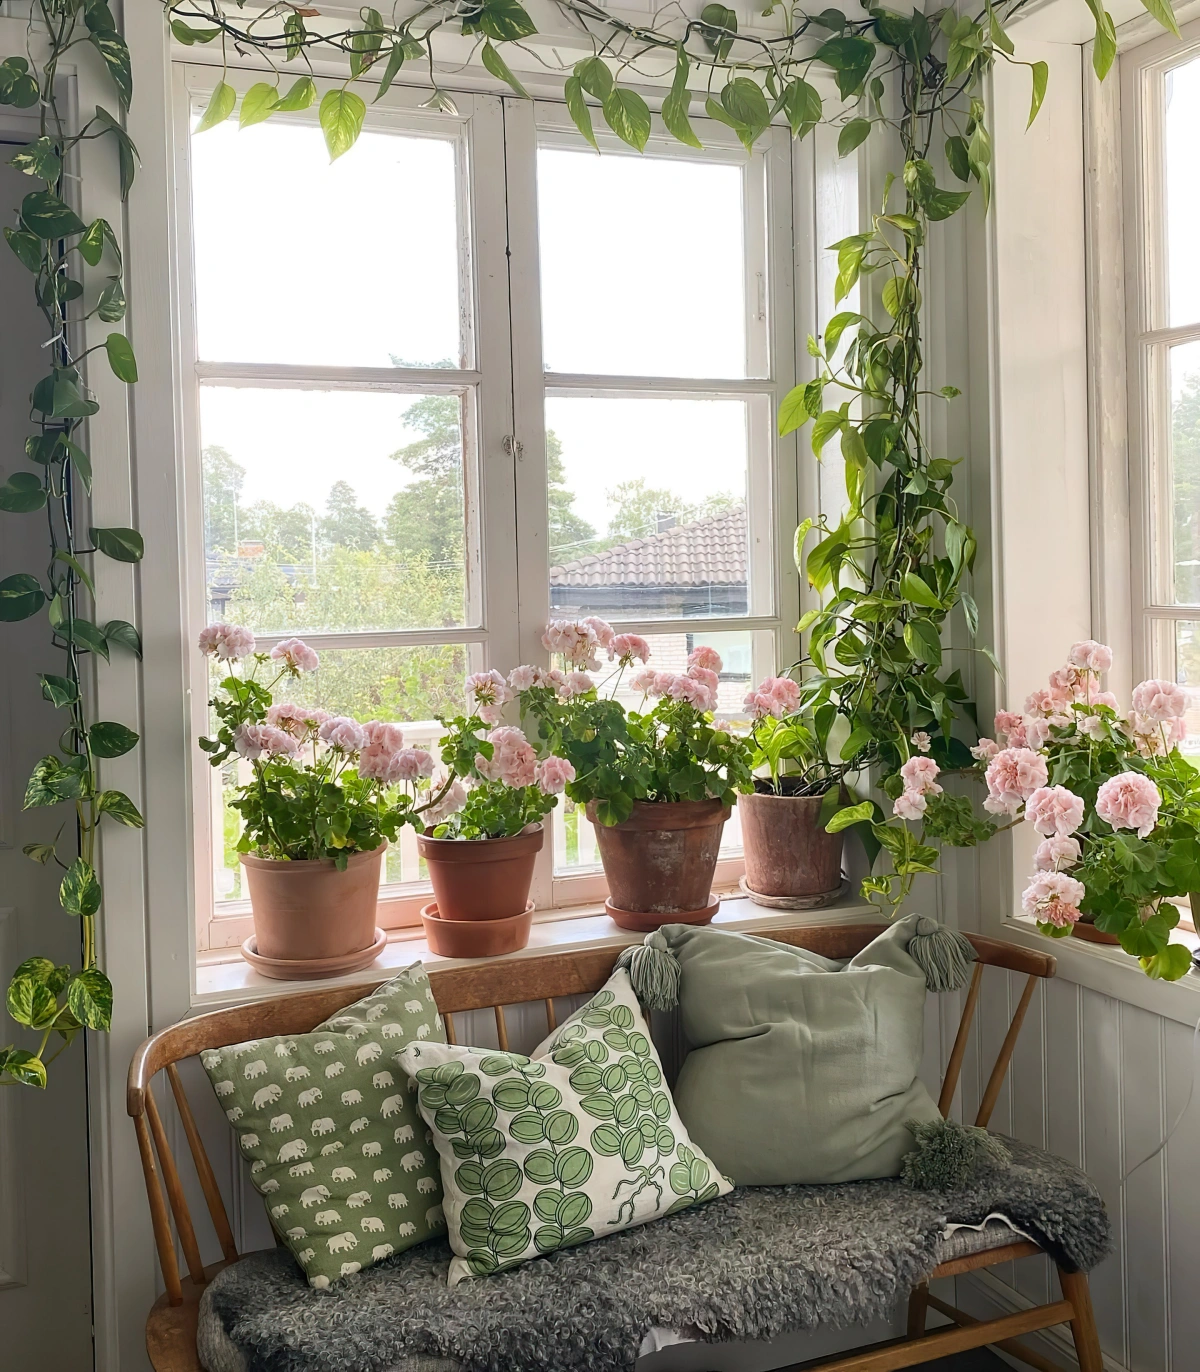 fenetre banc bois coussins decoratifs plantes grimpantes interieur geraniums